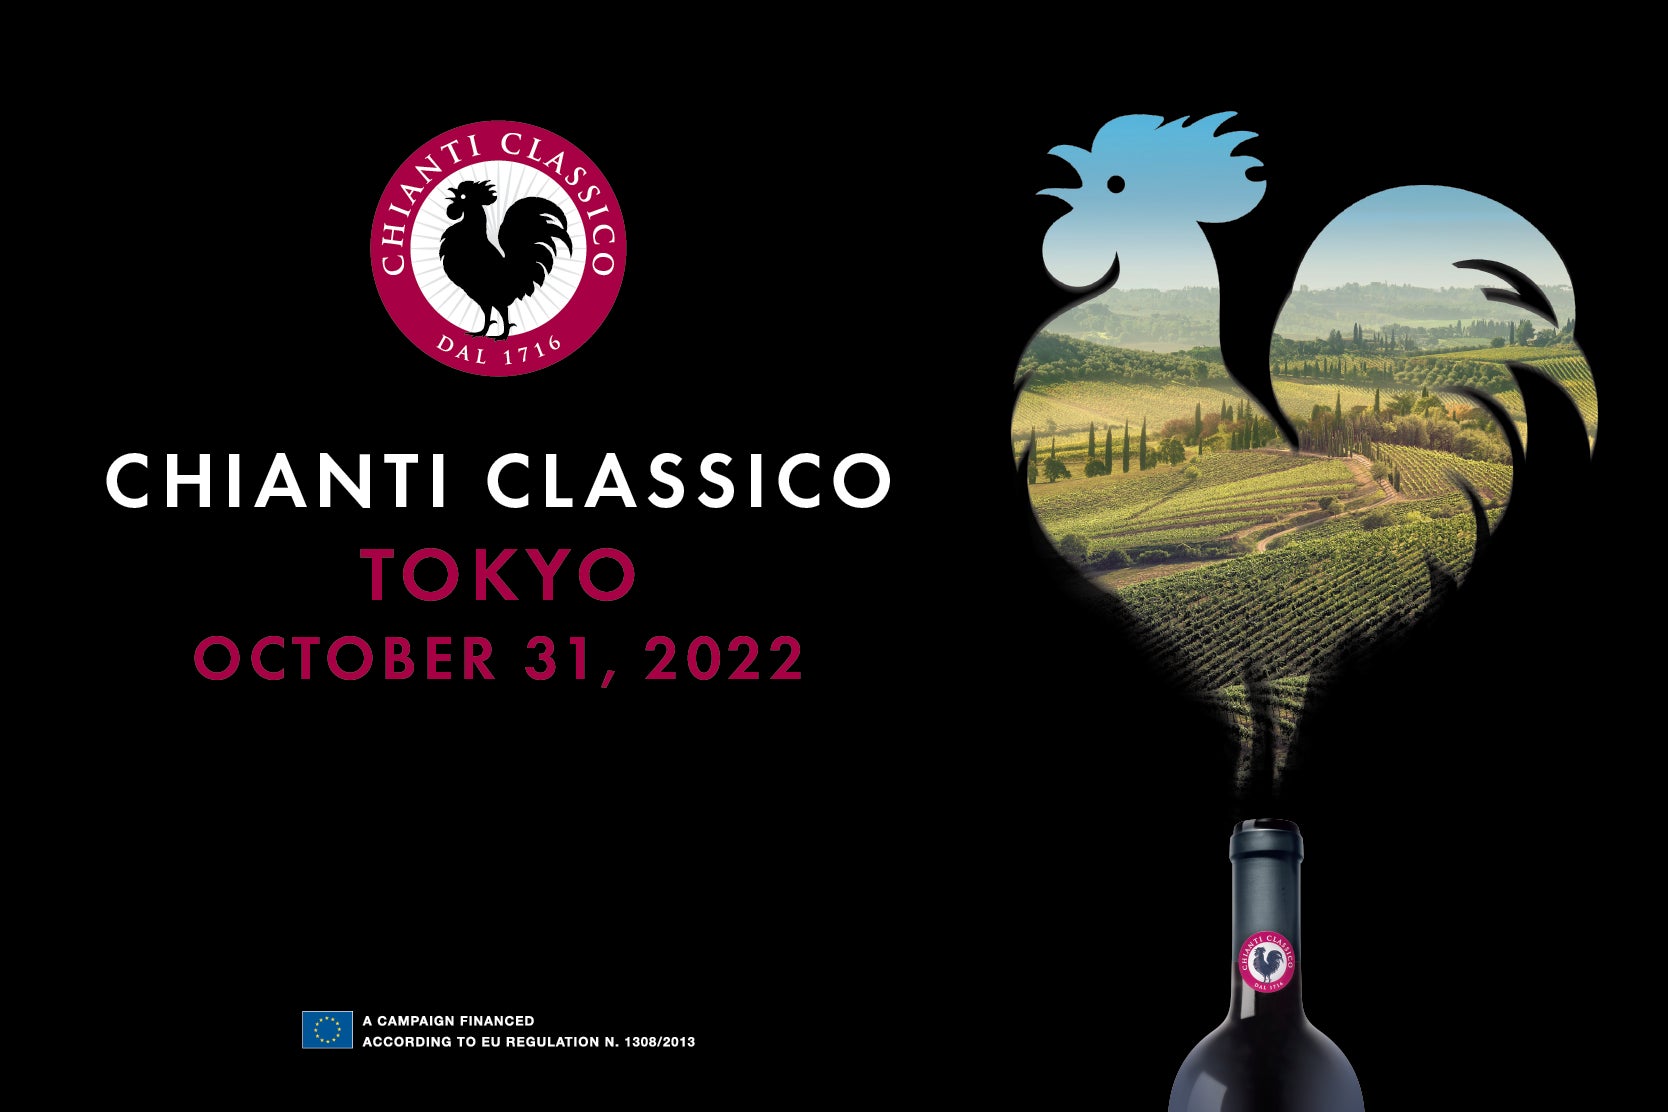 イタリアワインのキアンティ・クラッシコ協会、試飲会&マスタークラスの開催と収穫情報を発表